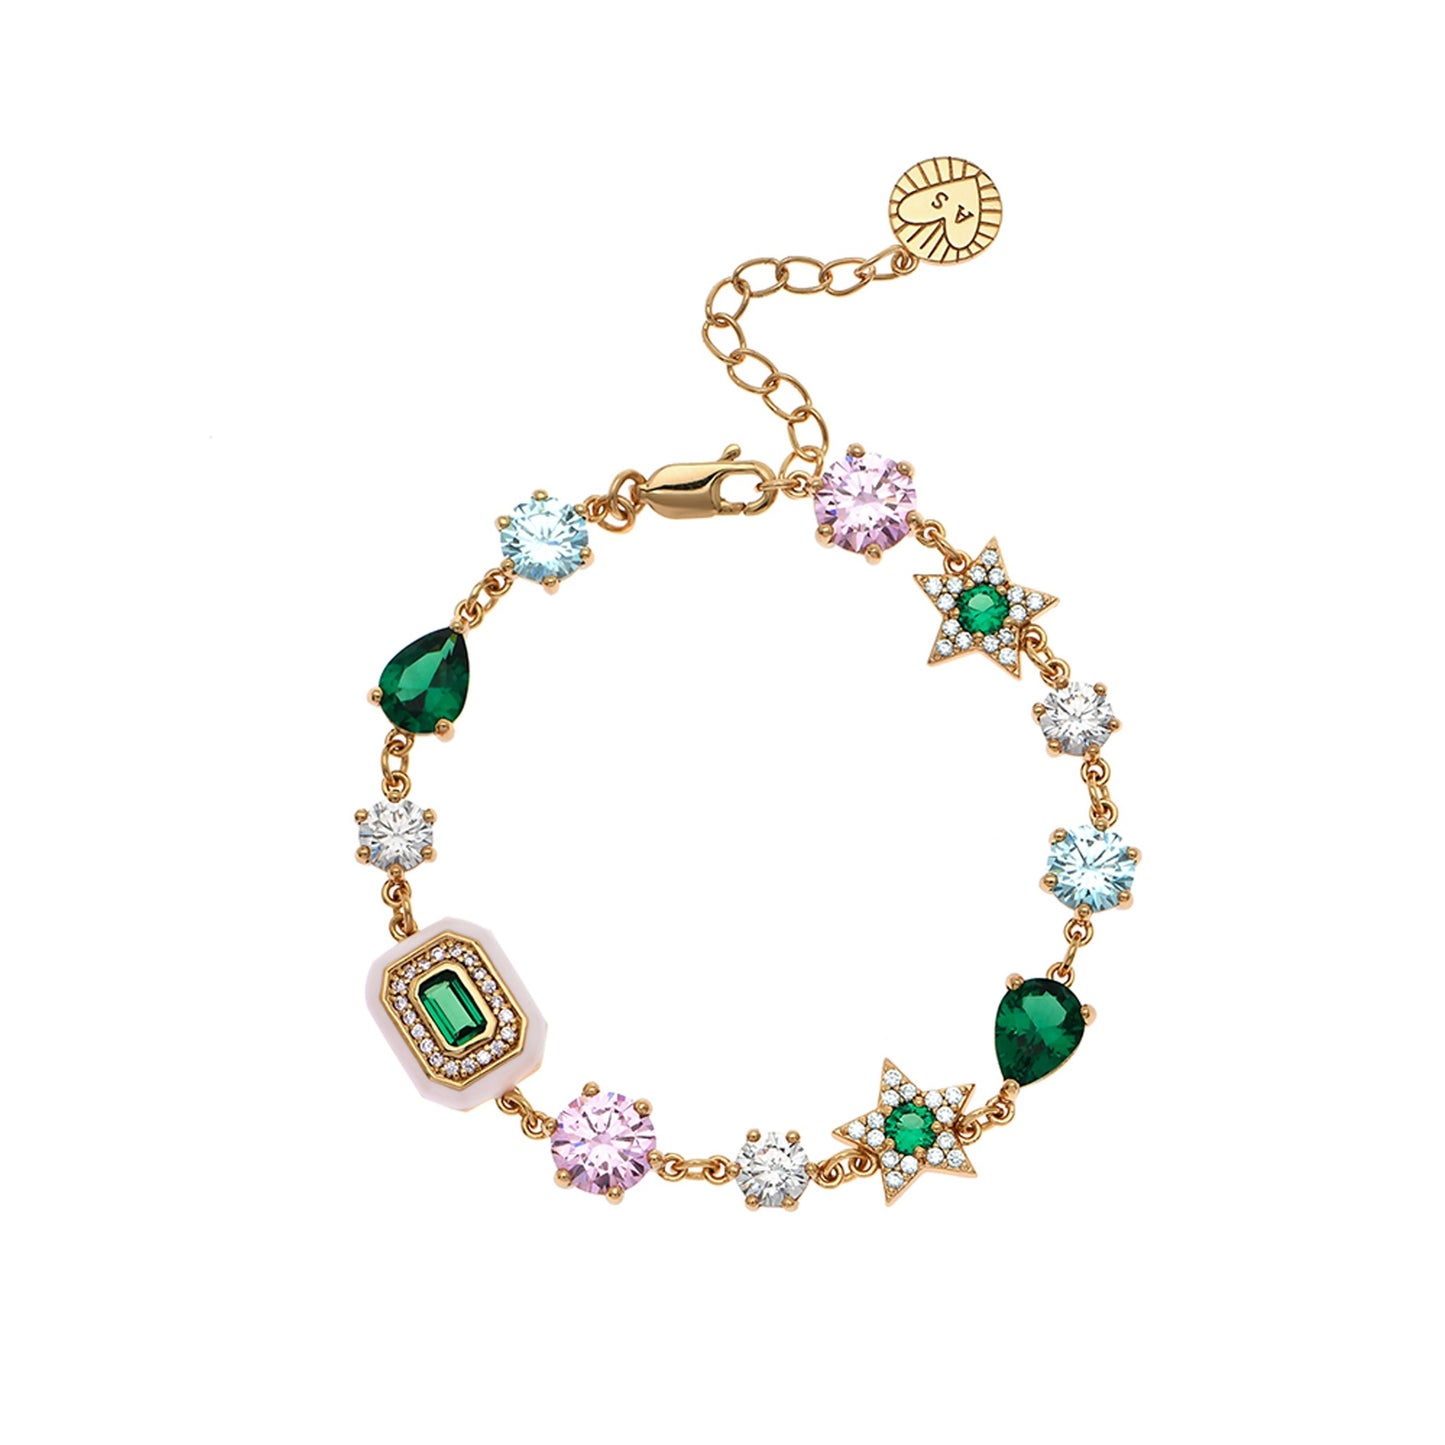 Celeste Cluster Bracelet Blush Pink, Emerald Green & Gold